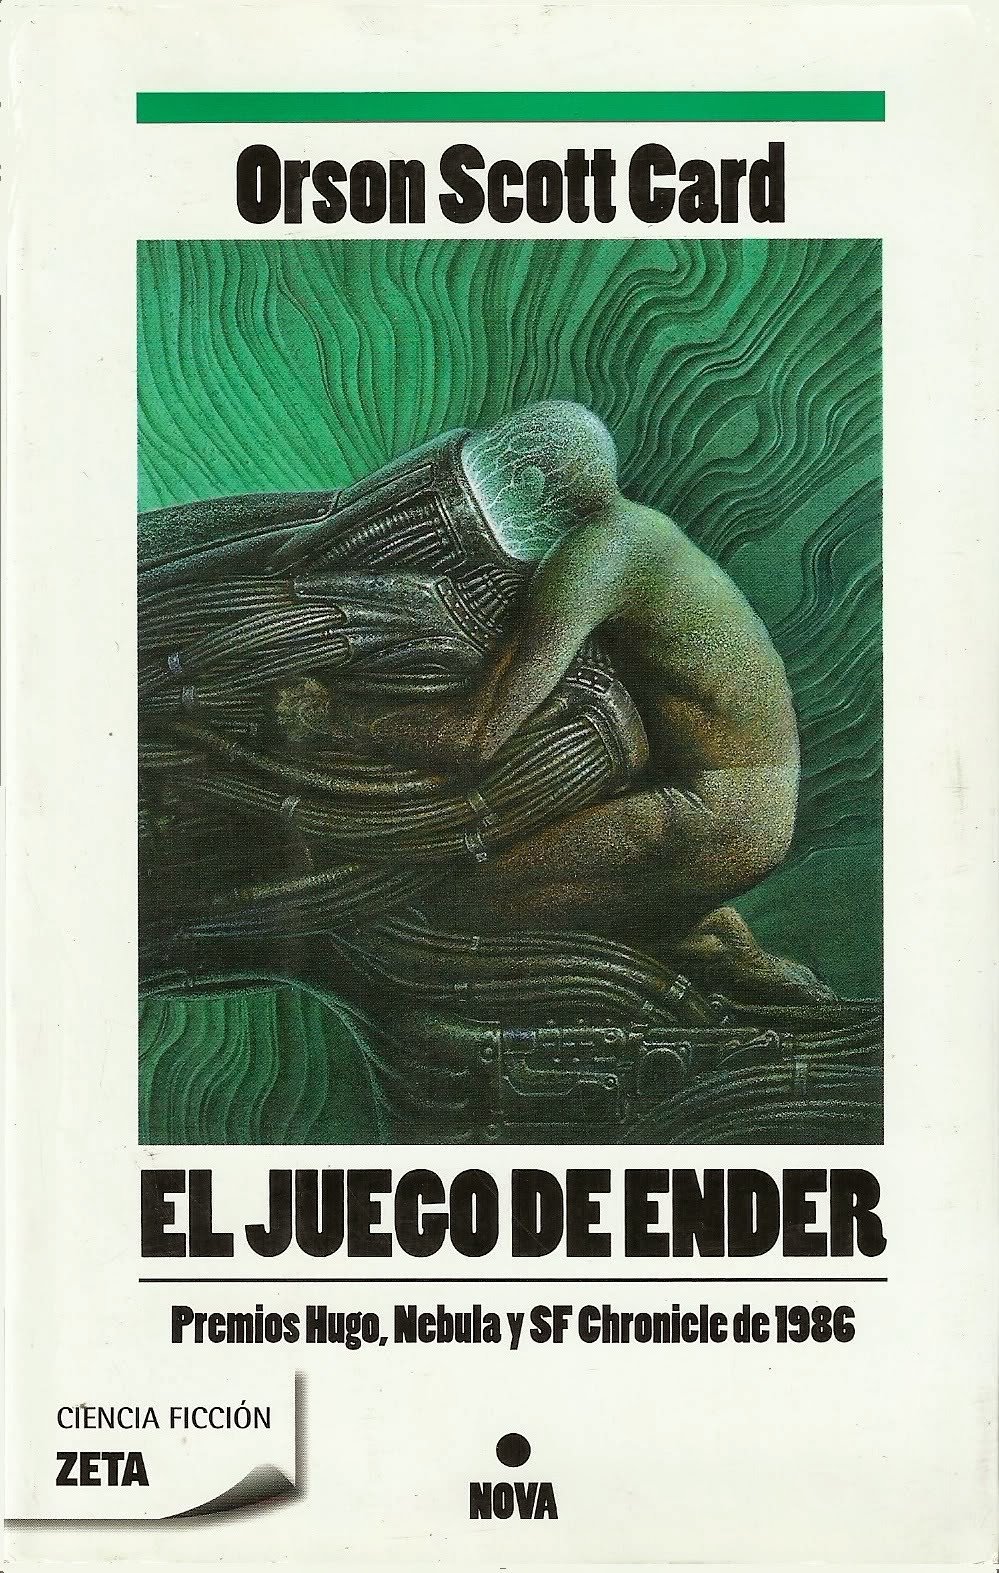 Orson Scott Card: El juego de Ender (Paperback, Spanish language, 2005, Ediciones B)